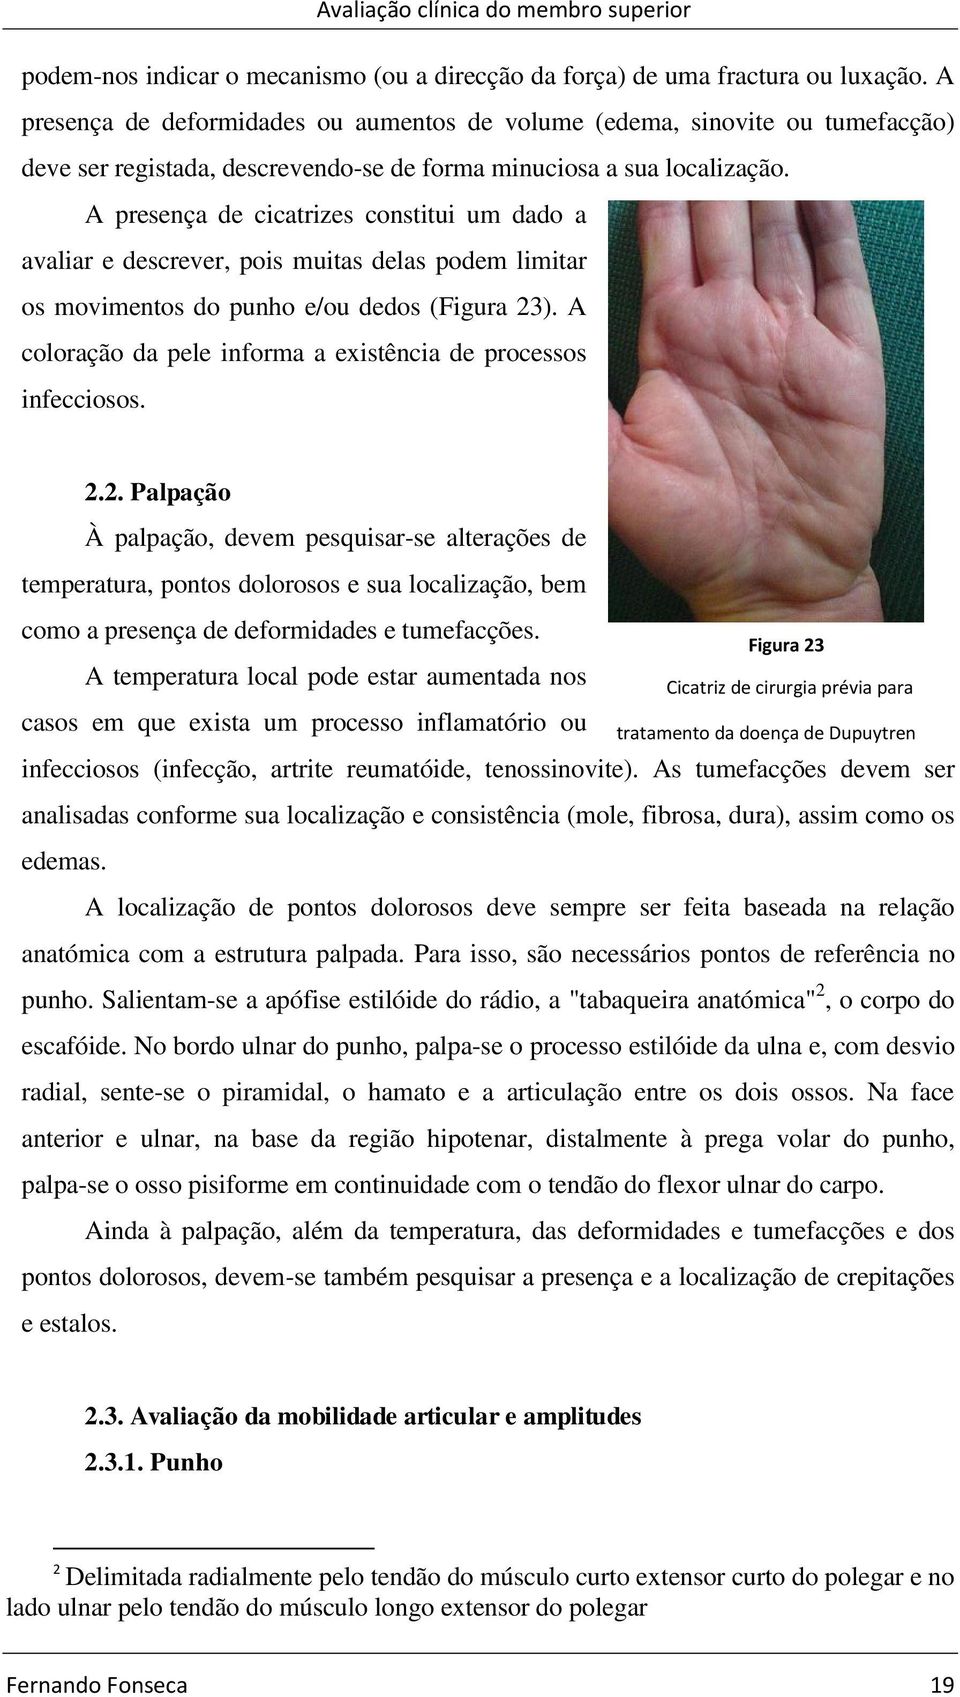 A presença de cicatrizes constitui um dado a avaliar e descrever, pois muitas delas podem limitar os movimentos do punho e/ou dedos (Figura 23).